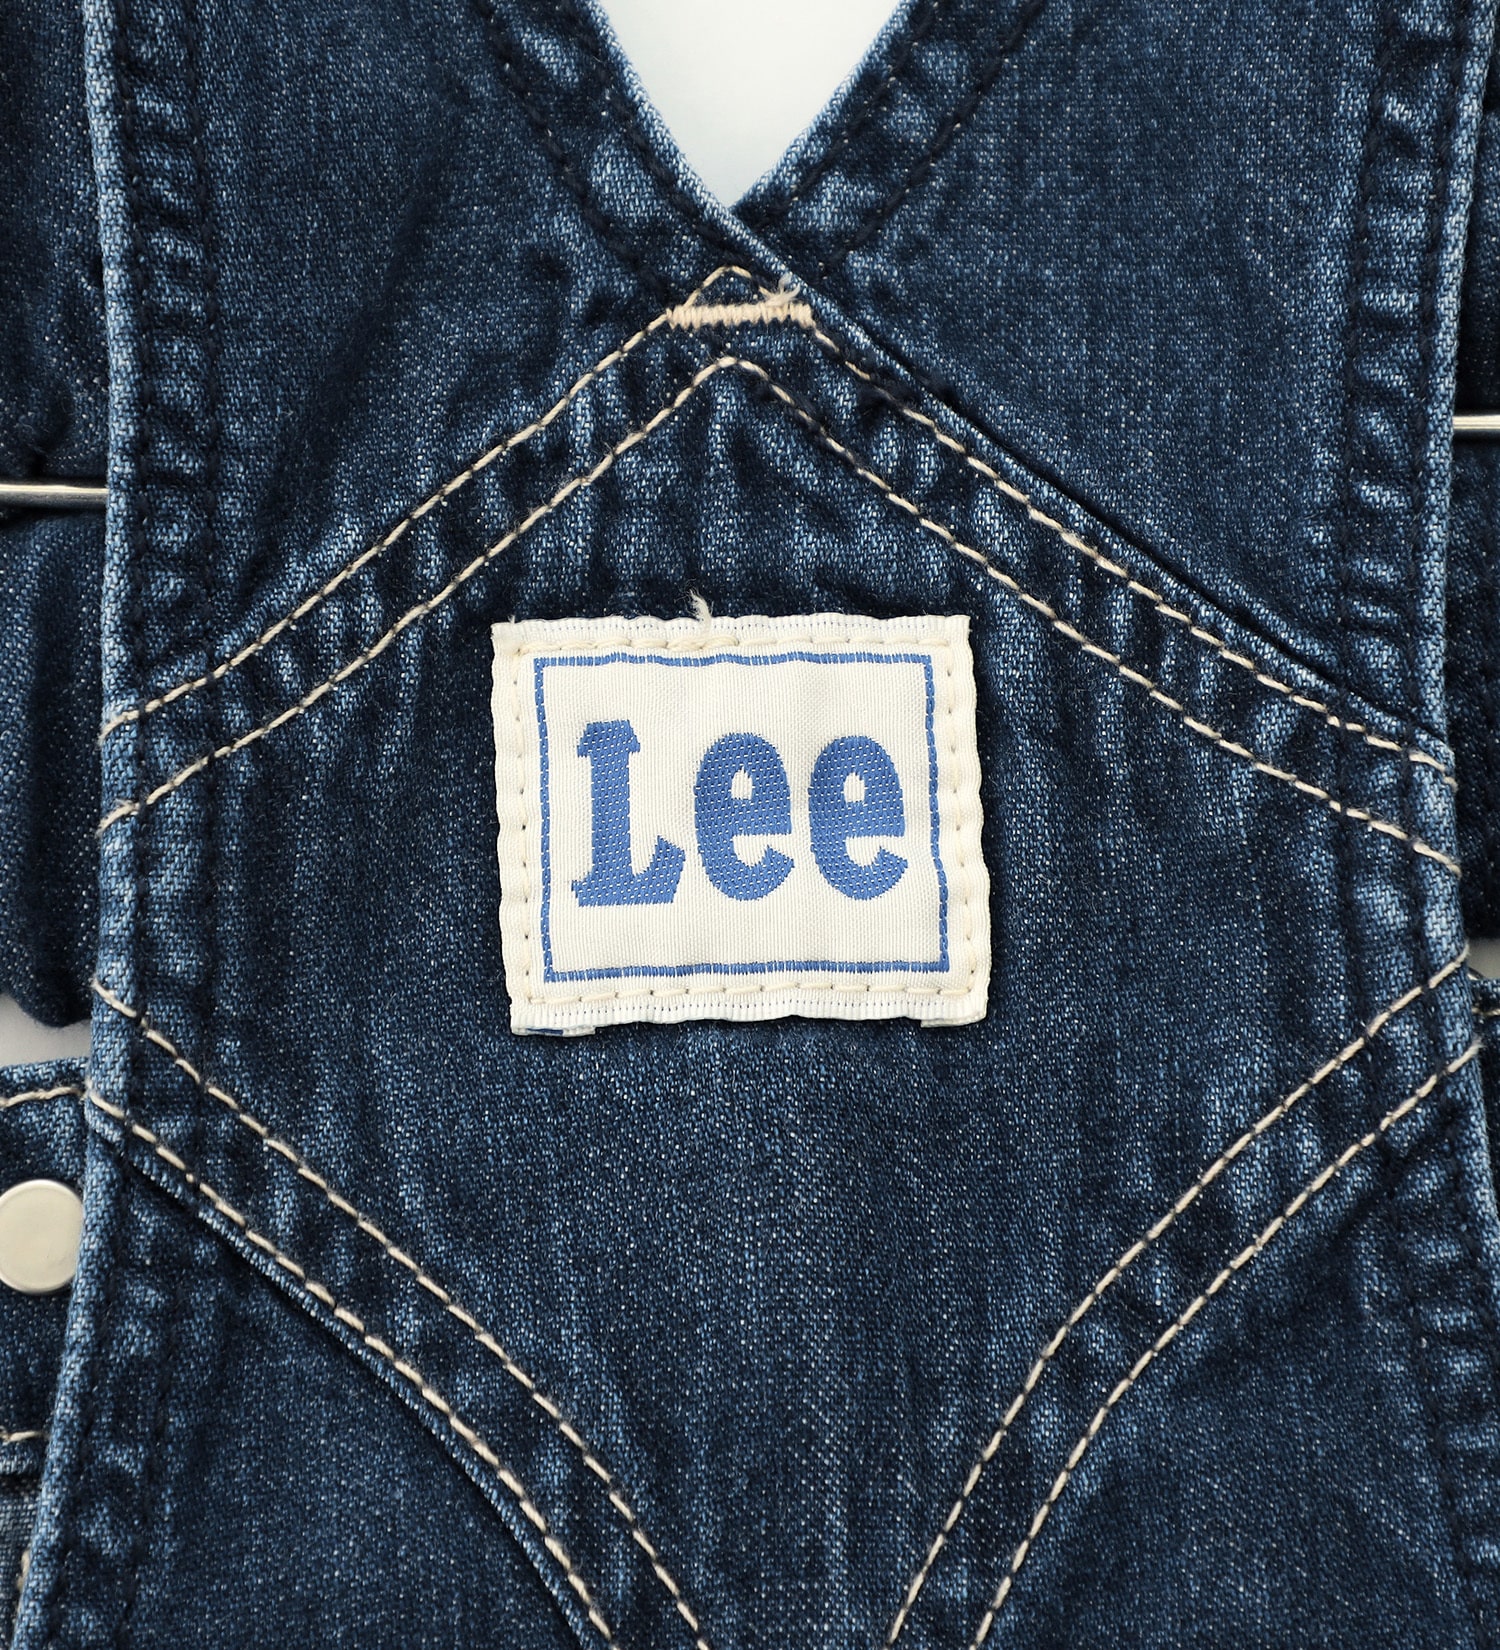 Lee(リー)の【110/120cm】キッズ ジャンパースカート|オールインワン/ジャンパースカート/キッズ|濃色ブルー